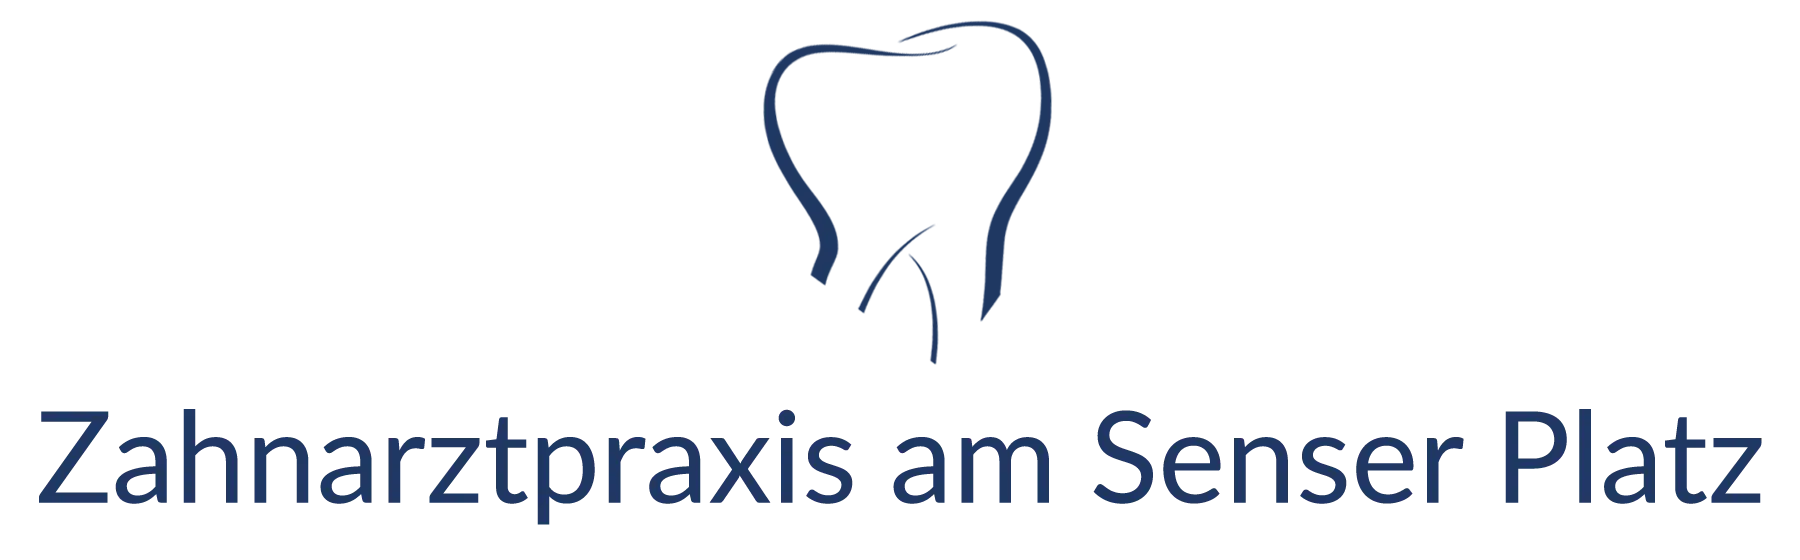 Zahnarzt Lörrach, Zahnarztpraxis am Senser Platz, Logo